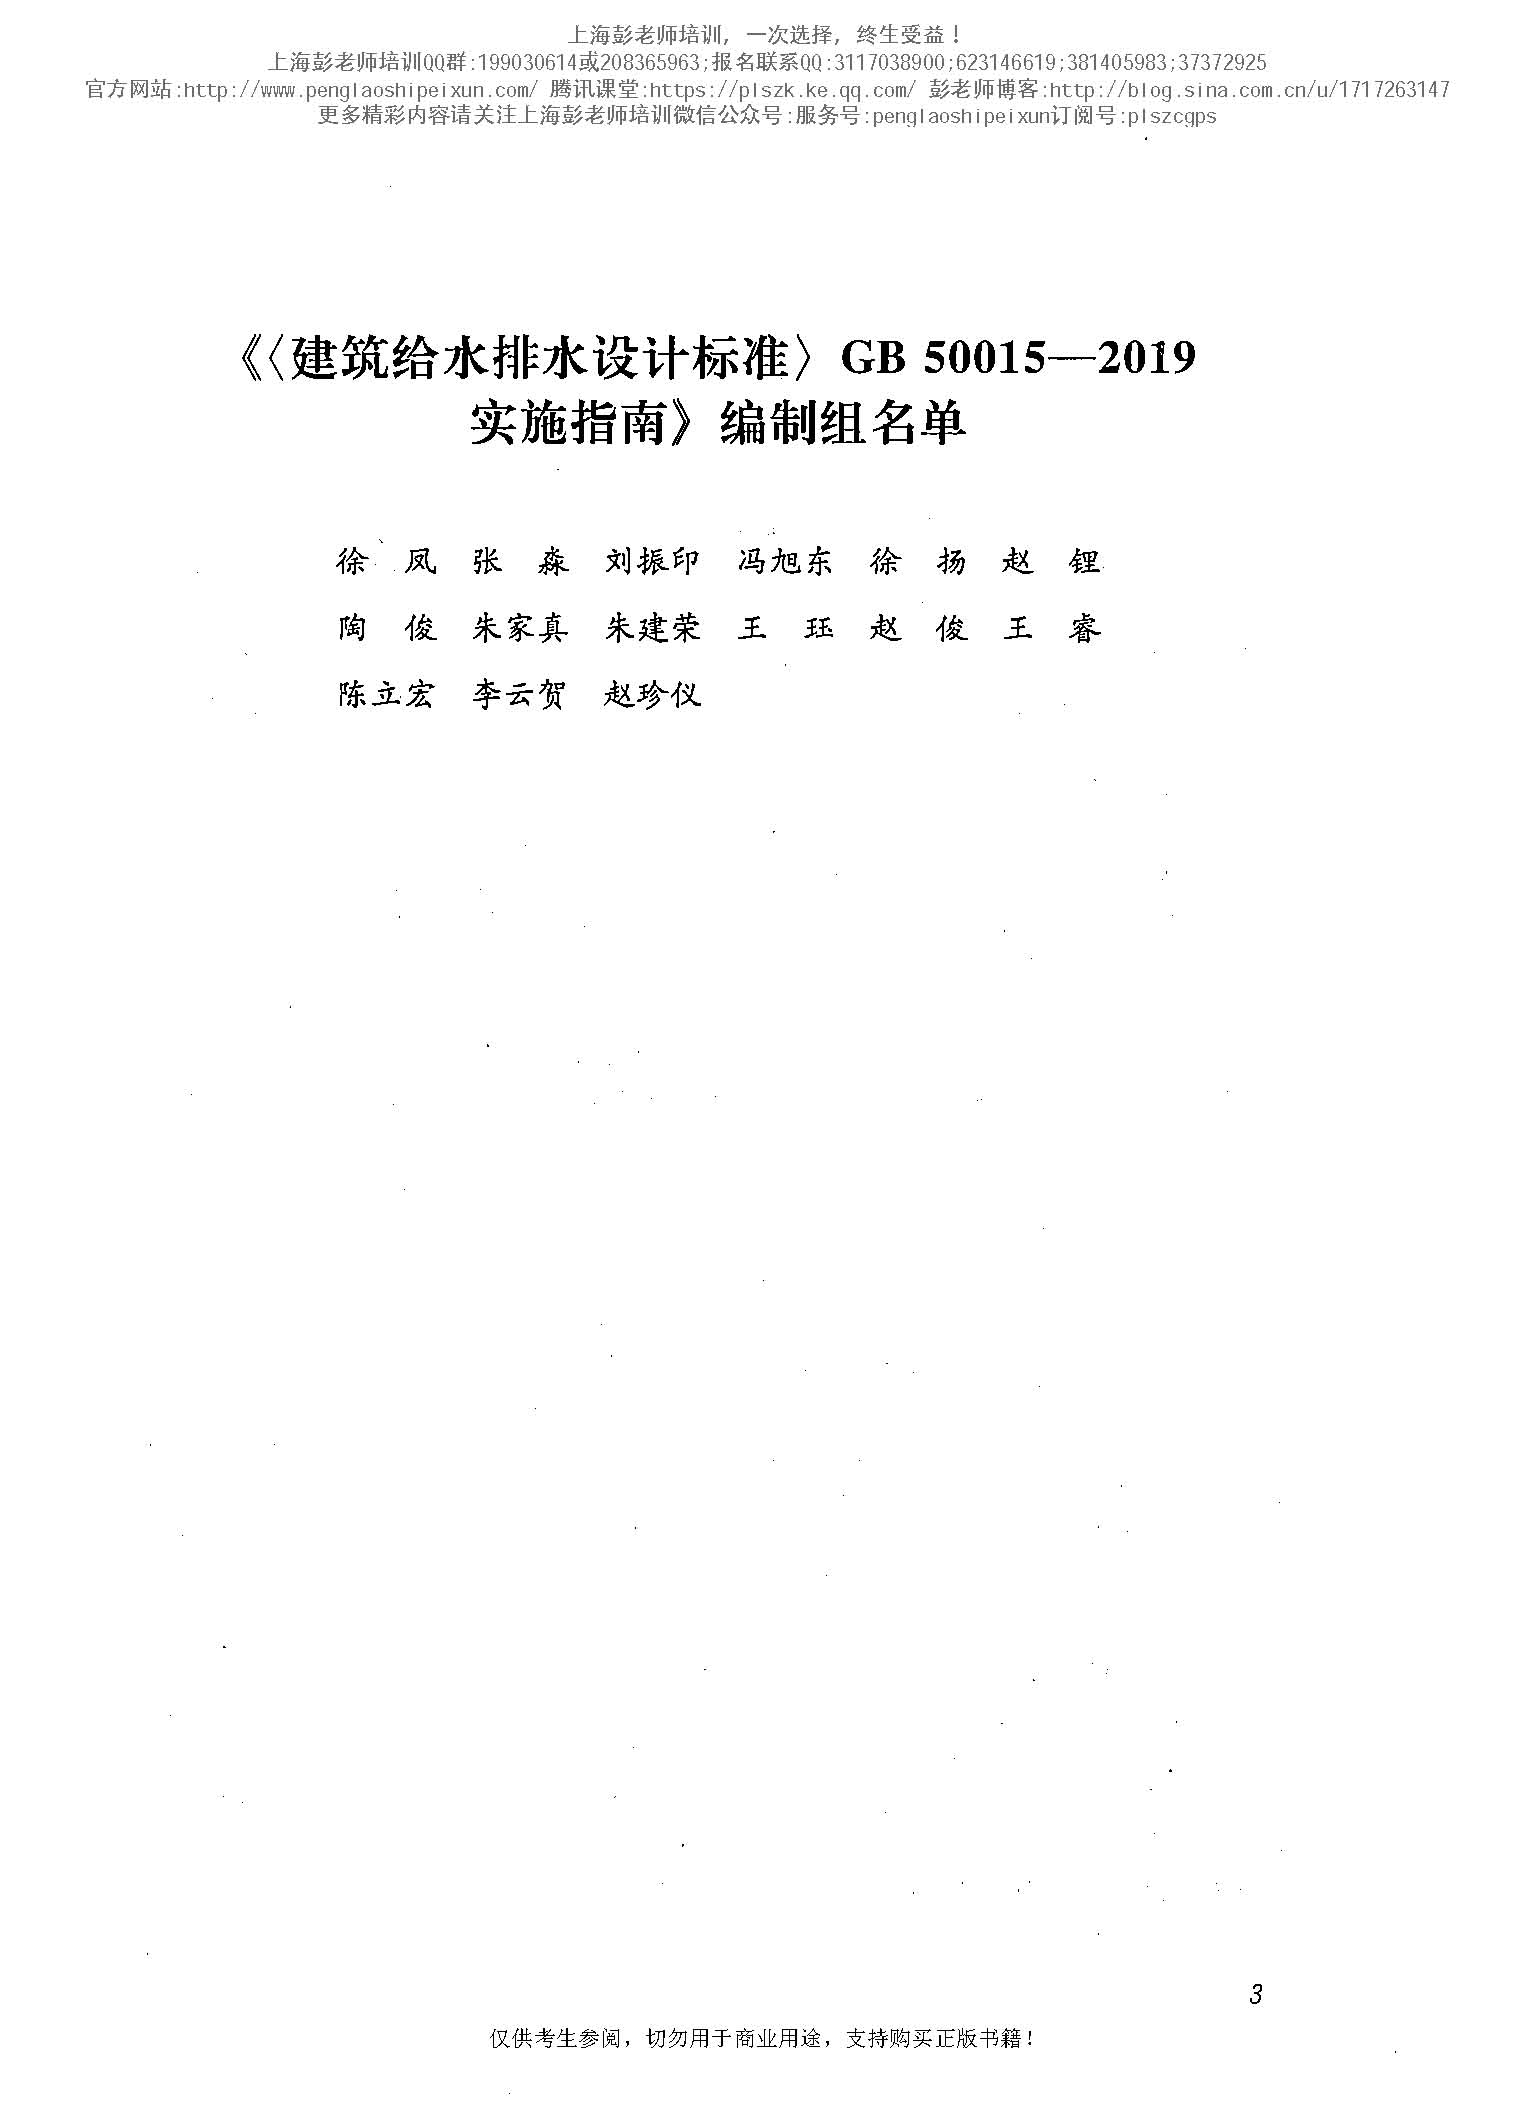 建筑给水排水设计标准GB50015-2019实施指南（OCR版）上海彭老师培训_页面_004.jpg.jpg